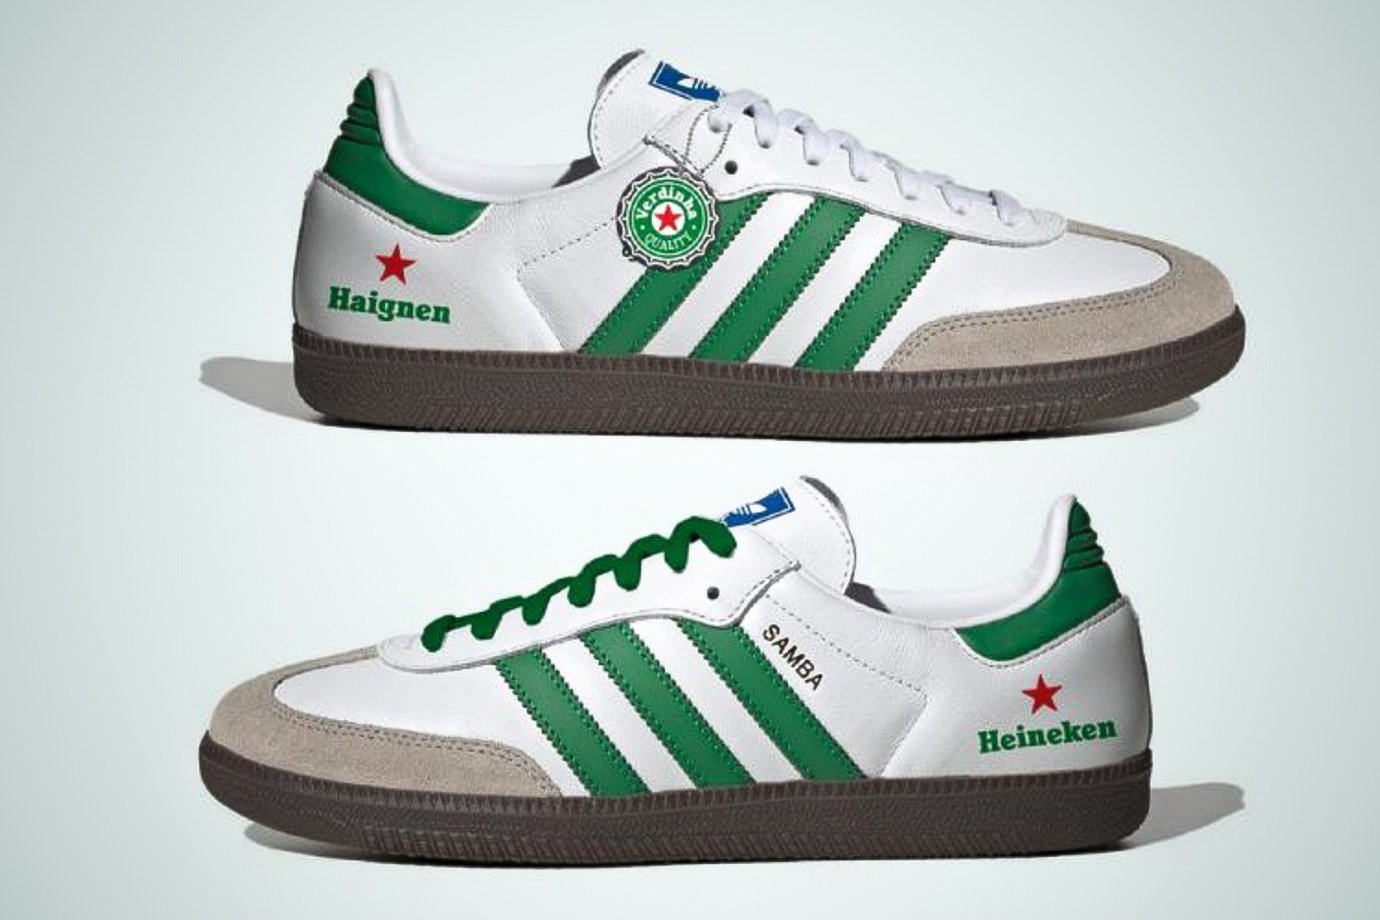 Tênis em colaboração da Heineken com Adidas